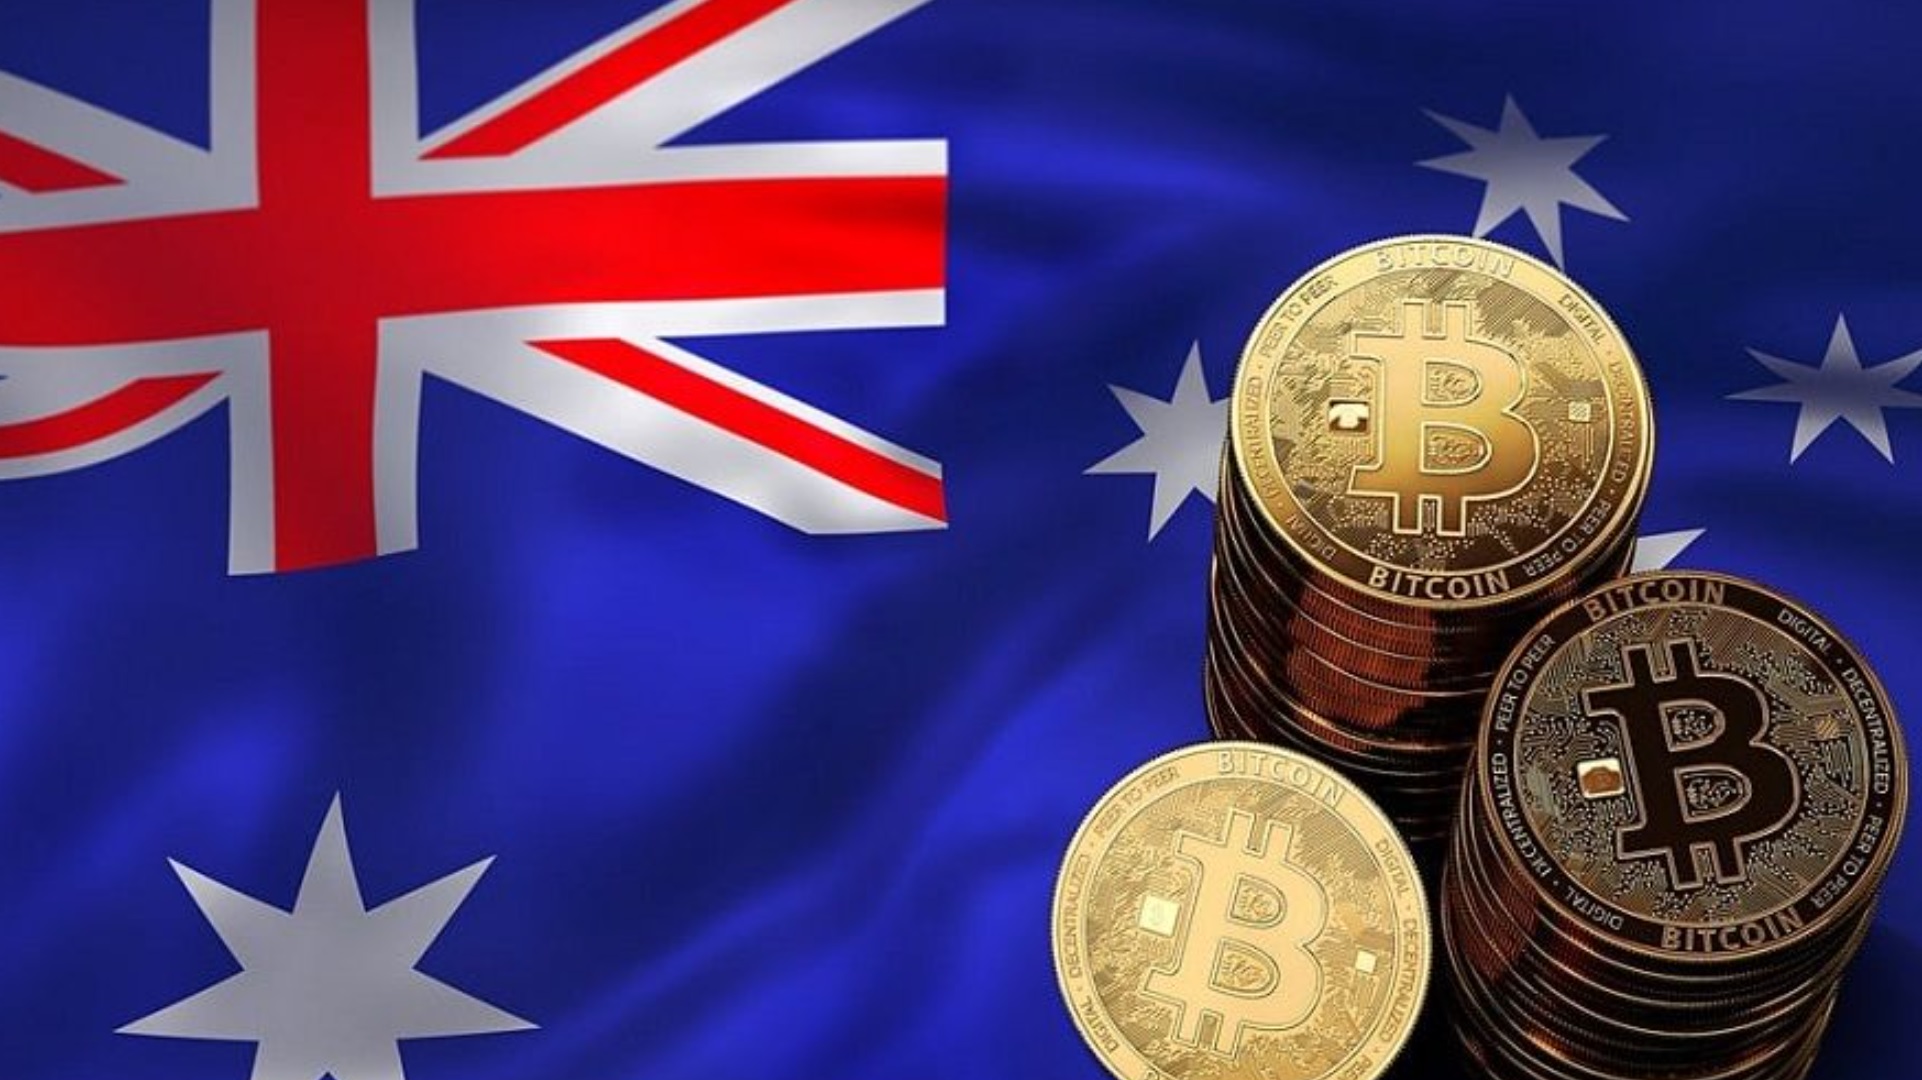 Криптовалютный рынок растет огромными темпами. Все больше и больше австралийцев покупают криптоактивы.